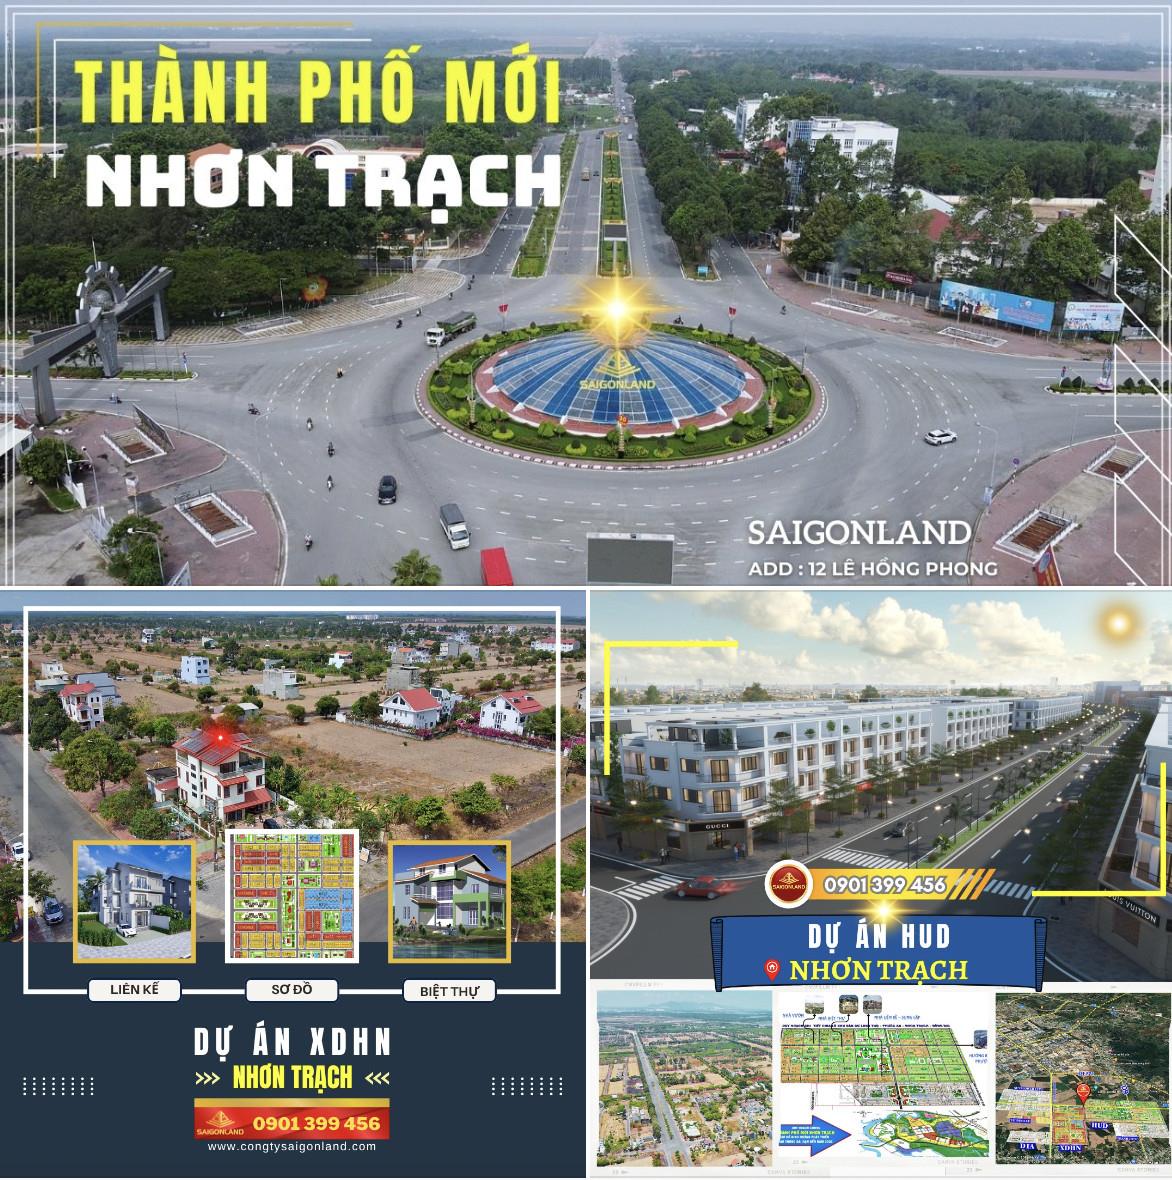 Đất nền Nhơn Trạch sổ sẵn - giá bán mới nhất 20 nền - Saigonland Cập nhật sản phẩm đất nền dự án - Ảnh 2